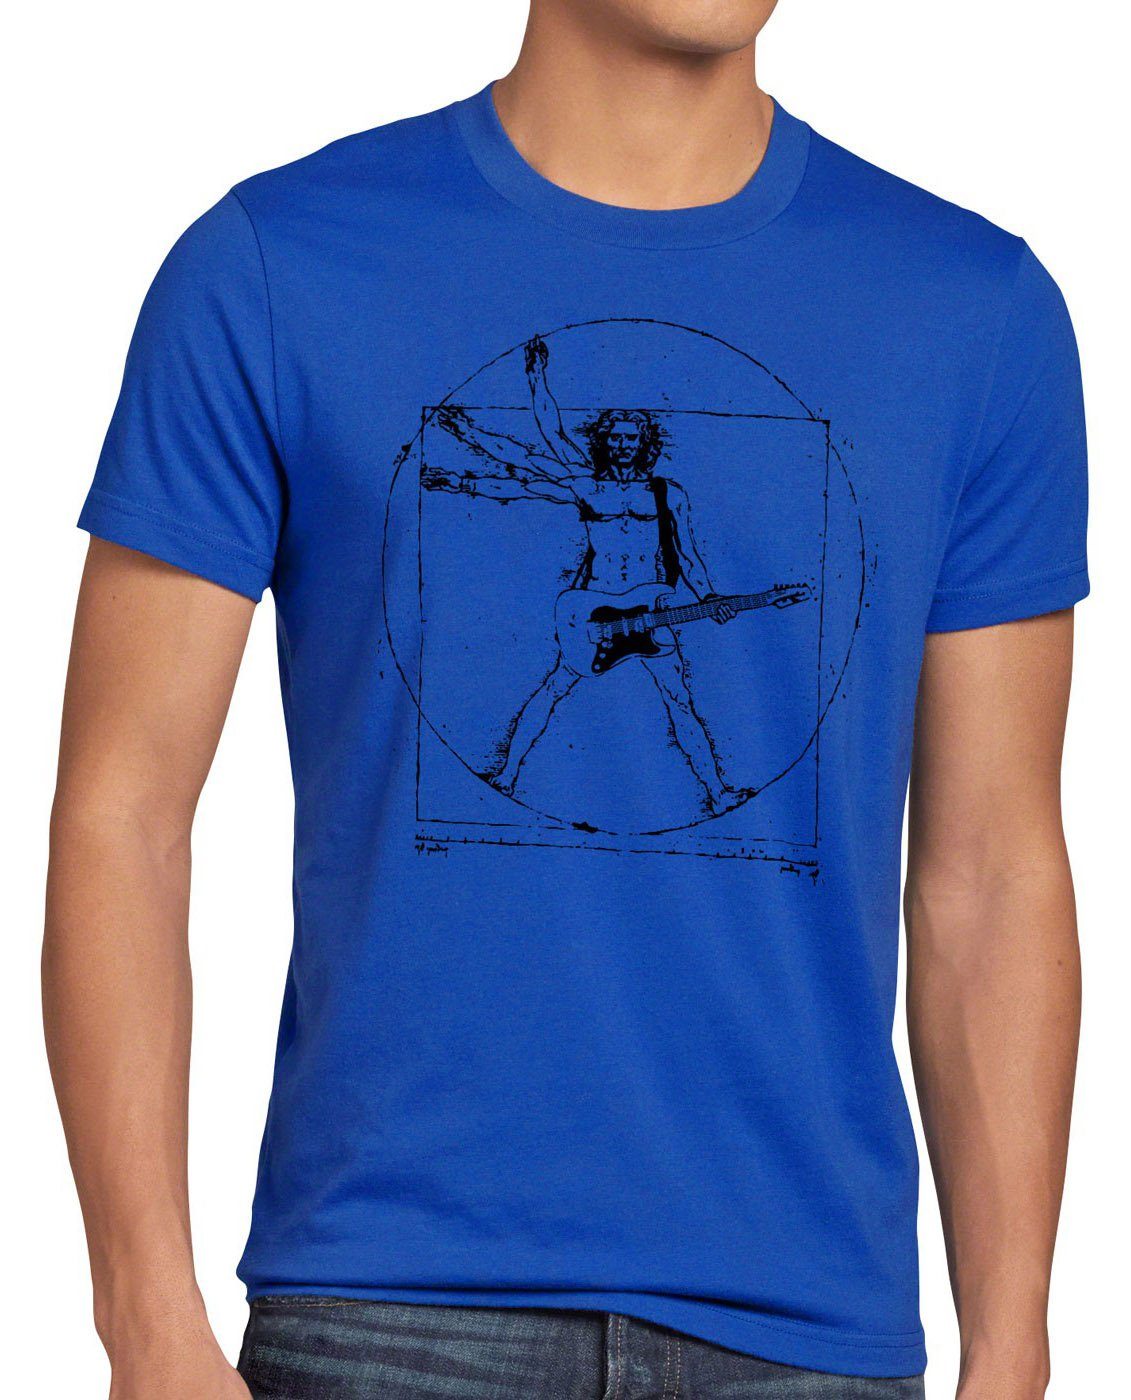 vinyl Vinci T-Shirt Da metal Herren open Rock festival blau musik gitarre mensch Print-Shirt style3 T-Shirt wacken air